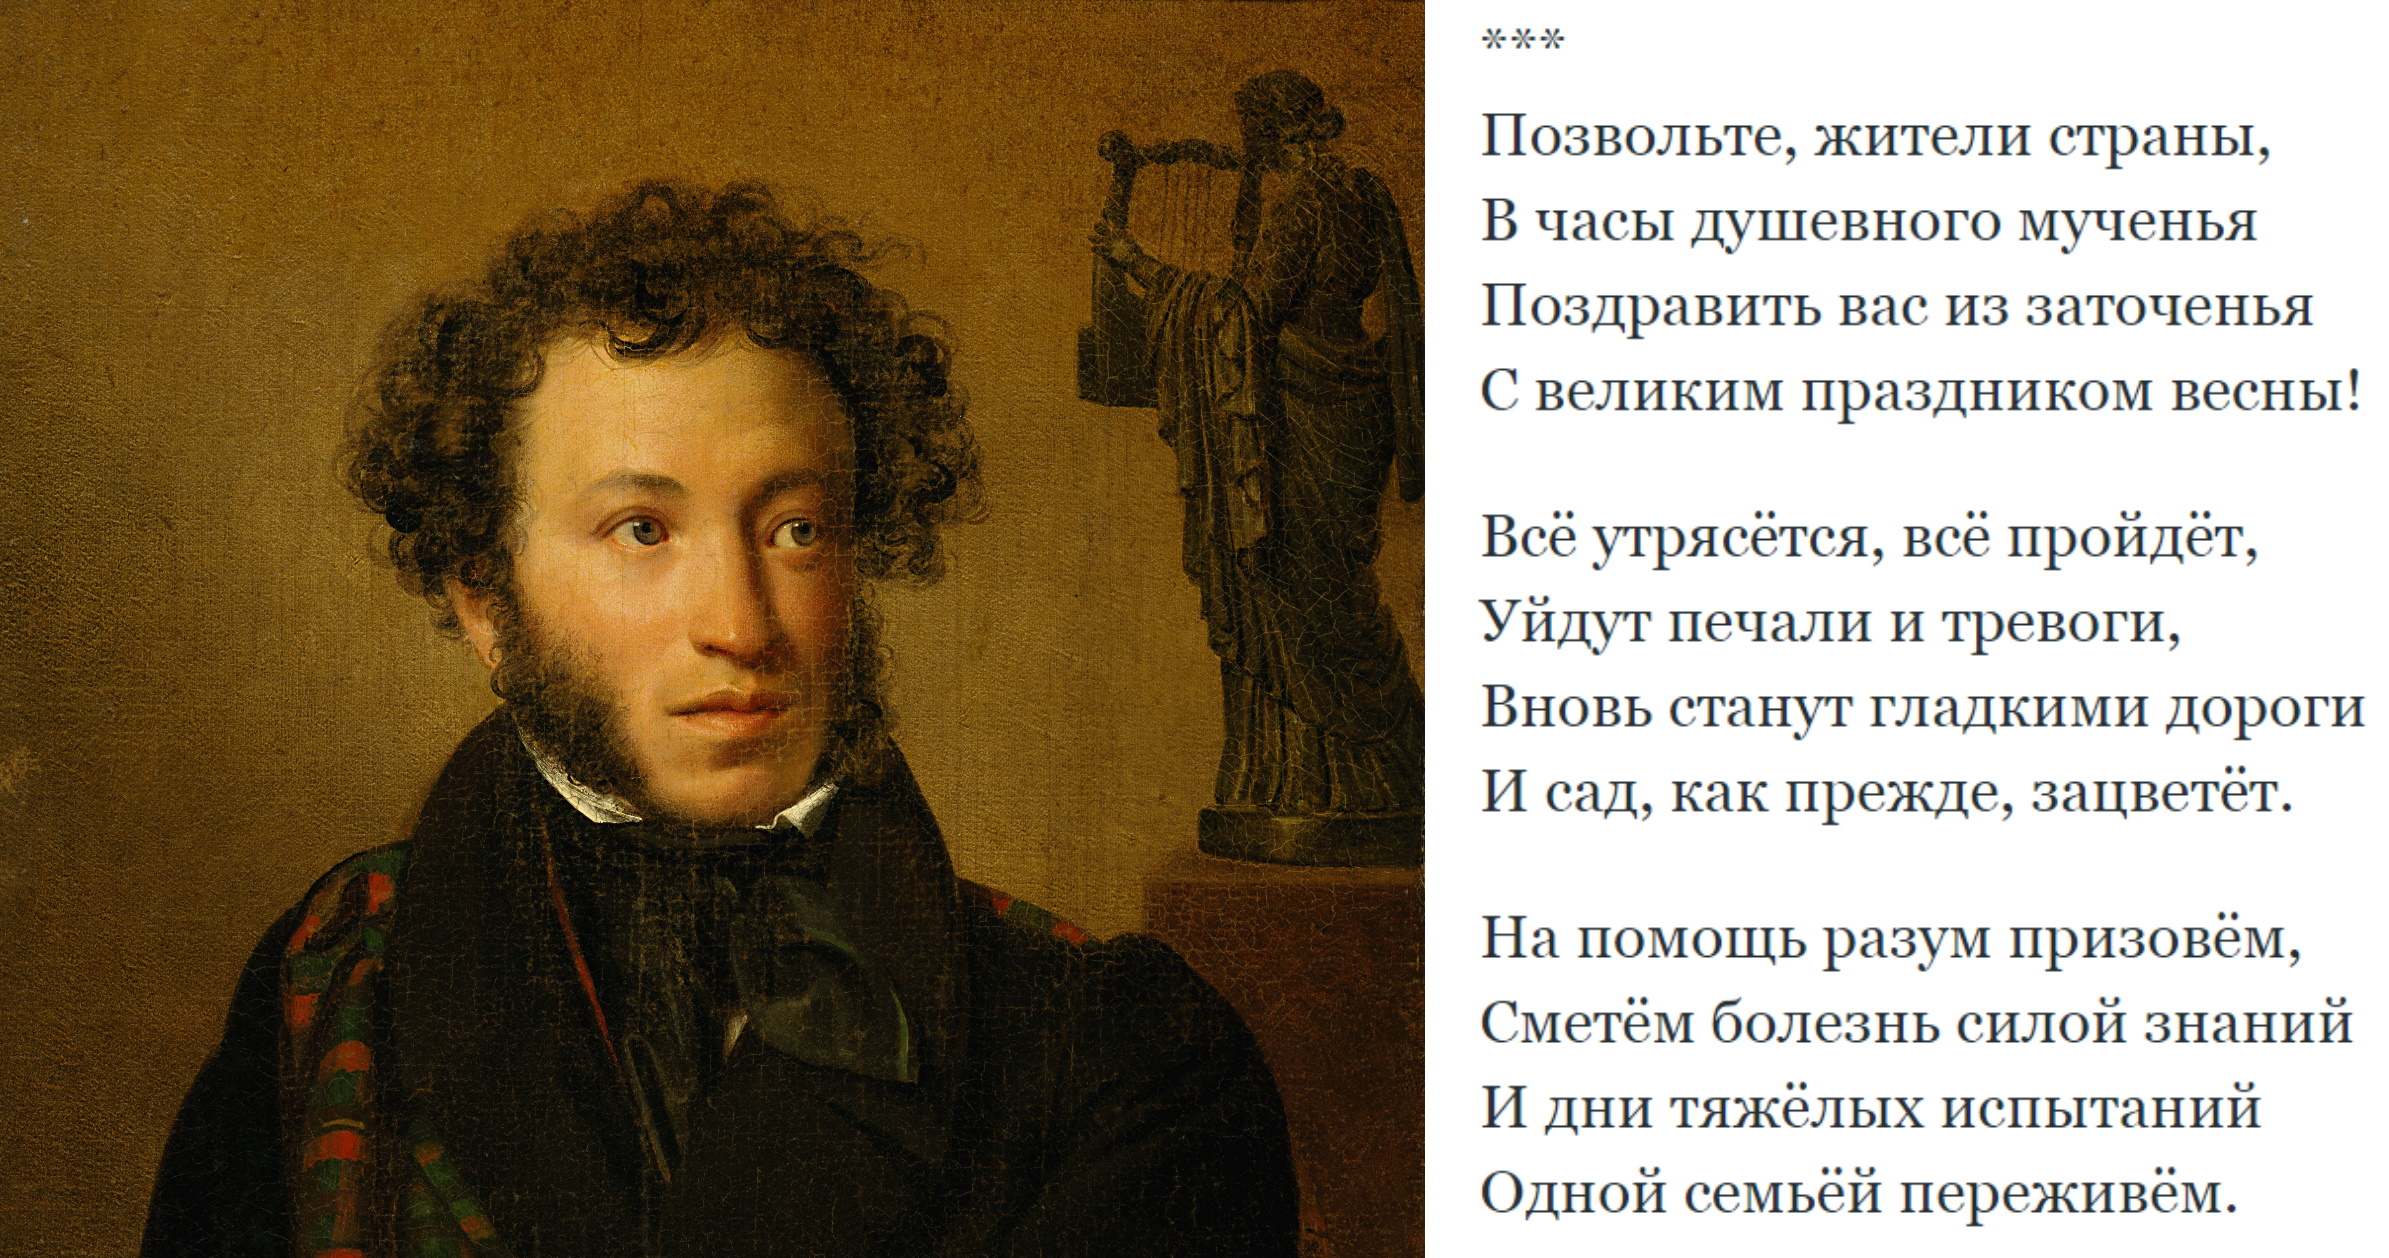 Пушкин и Лермонтов